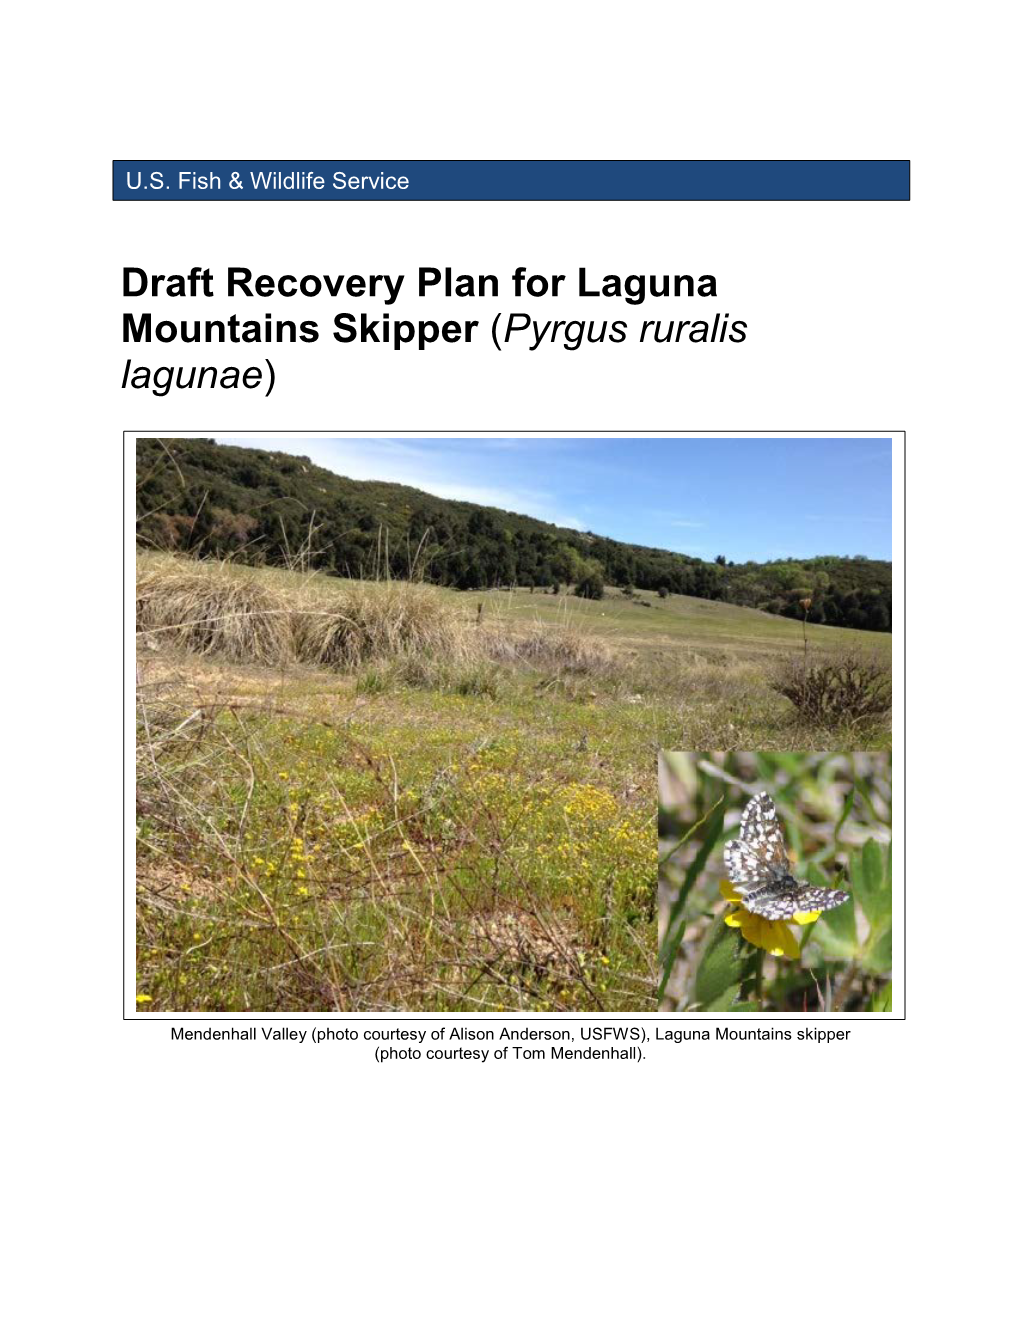 Draft Recovery Plan for Laguna Mountains Skipper (Pyrgus Ruralis Lagunae)